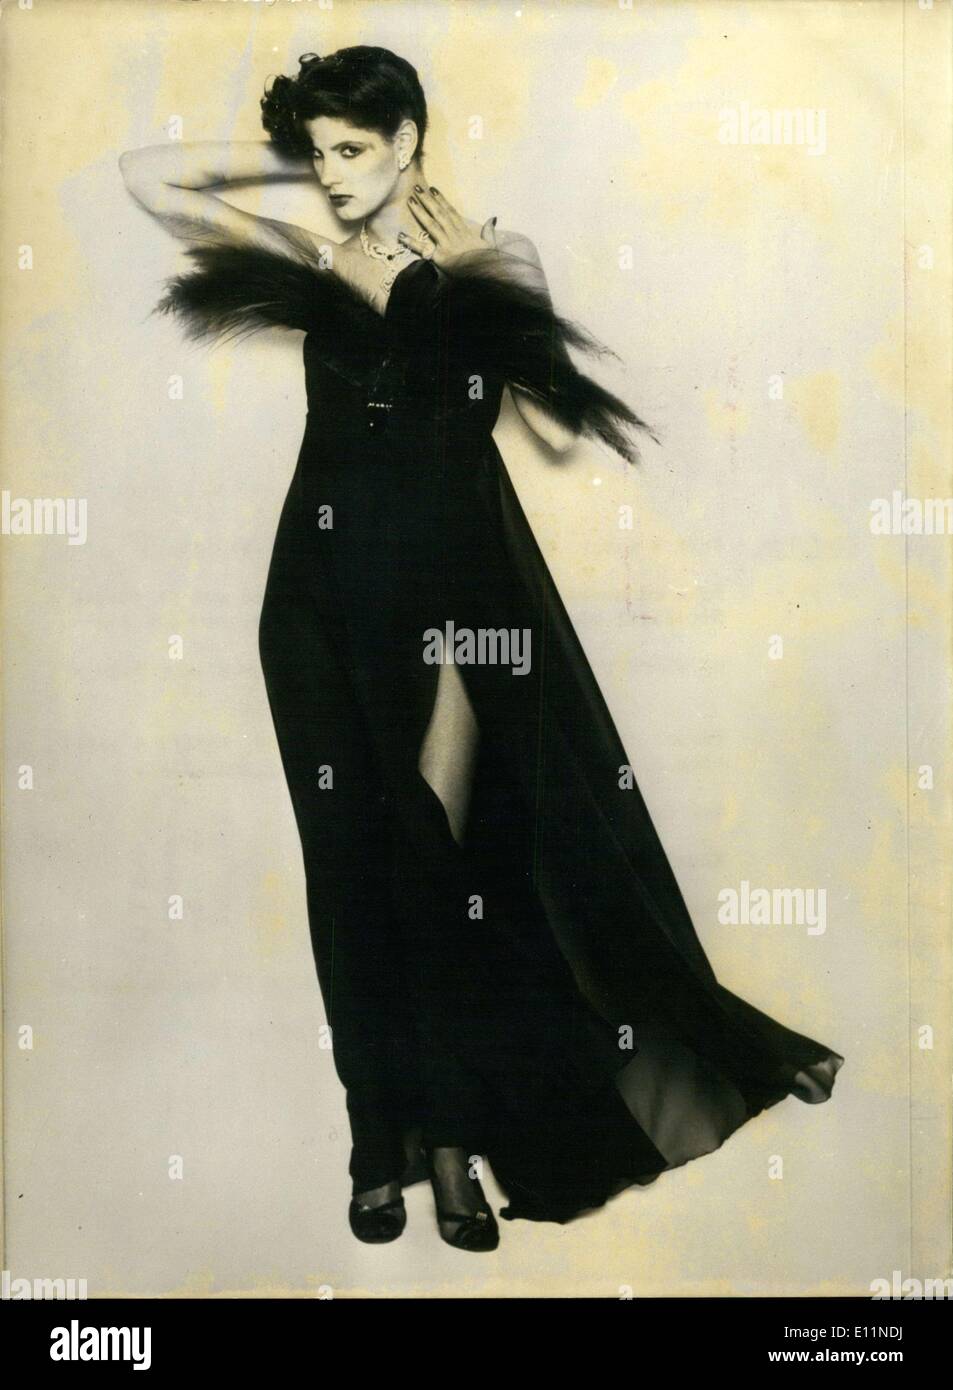 Juillet 02, 1979 - Soirée pour l'automne et l'hiver, Kimijima luxueux du prêt-à-porter sont droites hors de Paris. Ici, c'est une robe du soir en mousseline noir doux avec une grande fente dans l'avant, décorées de plumes d'oiseaux de paradis le long de l'encolure. Banque D'Images